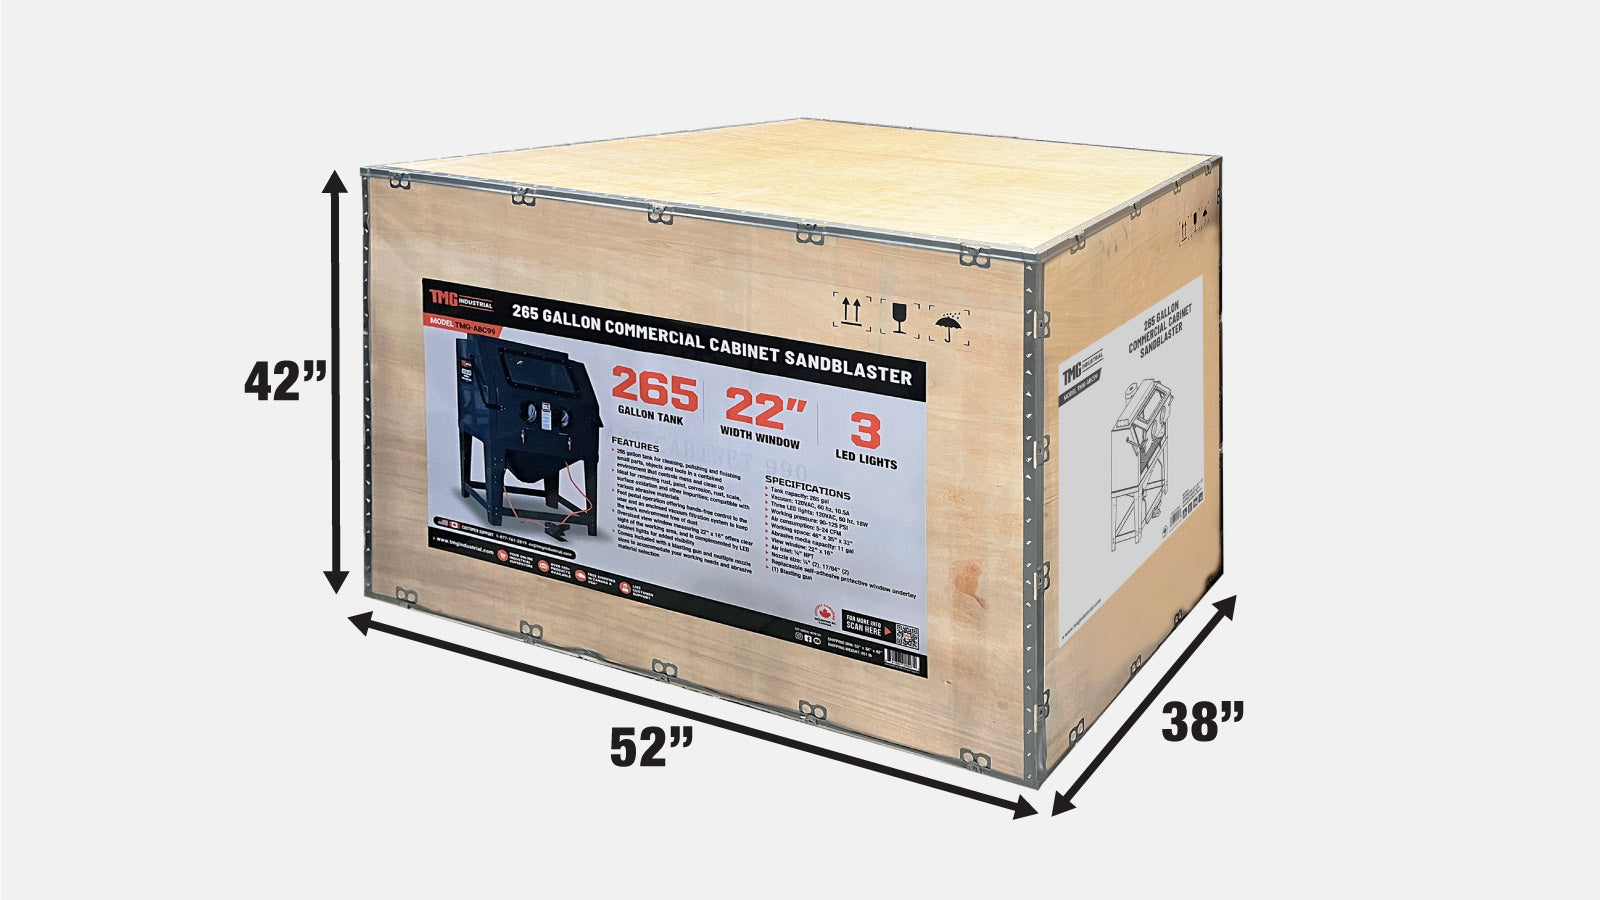 TMG Industrial 100 Gallon Commercial Cabinet Sandblaster, système de filtration sous vide, fenêtre de vue surdimensionnée, 125 PSI, 24 CFM, TMG-ABC99-shipping-info-image